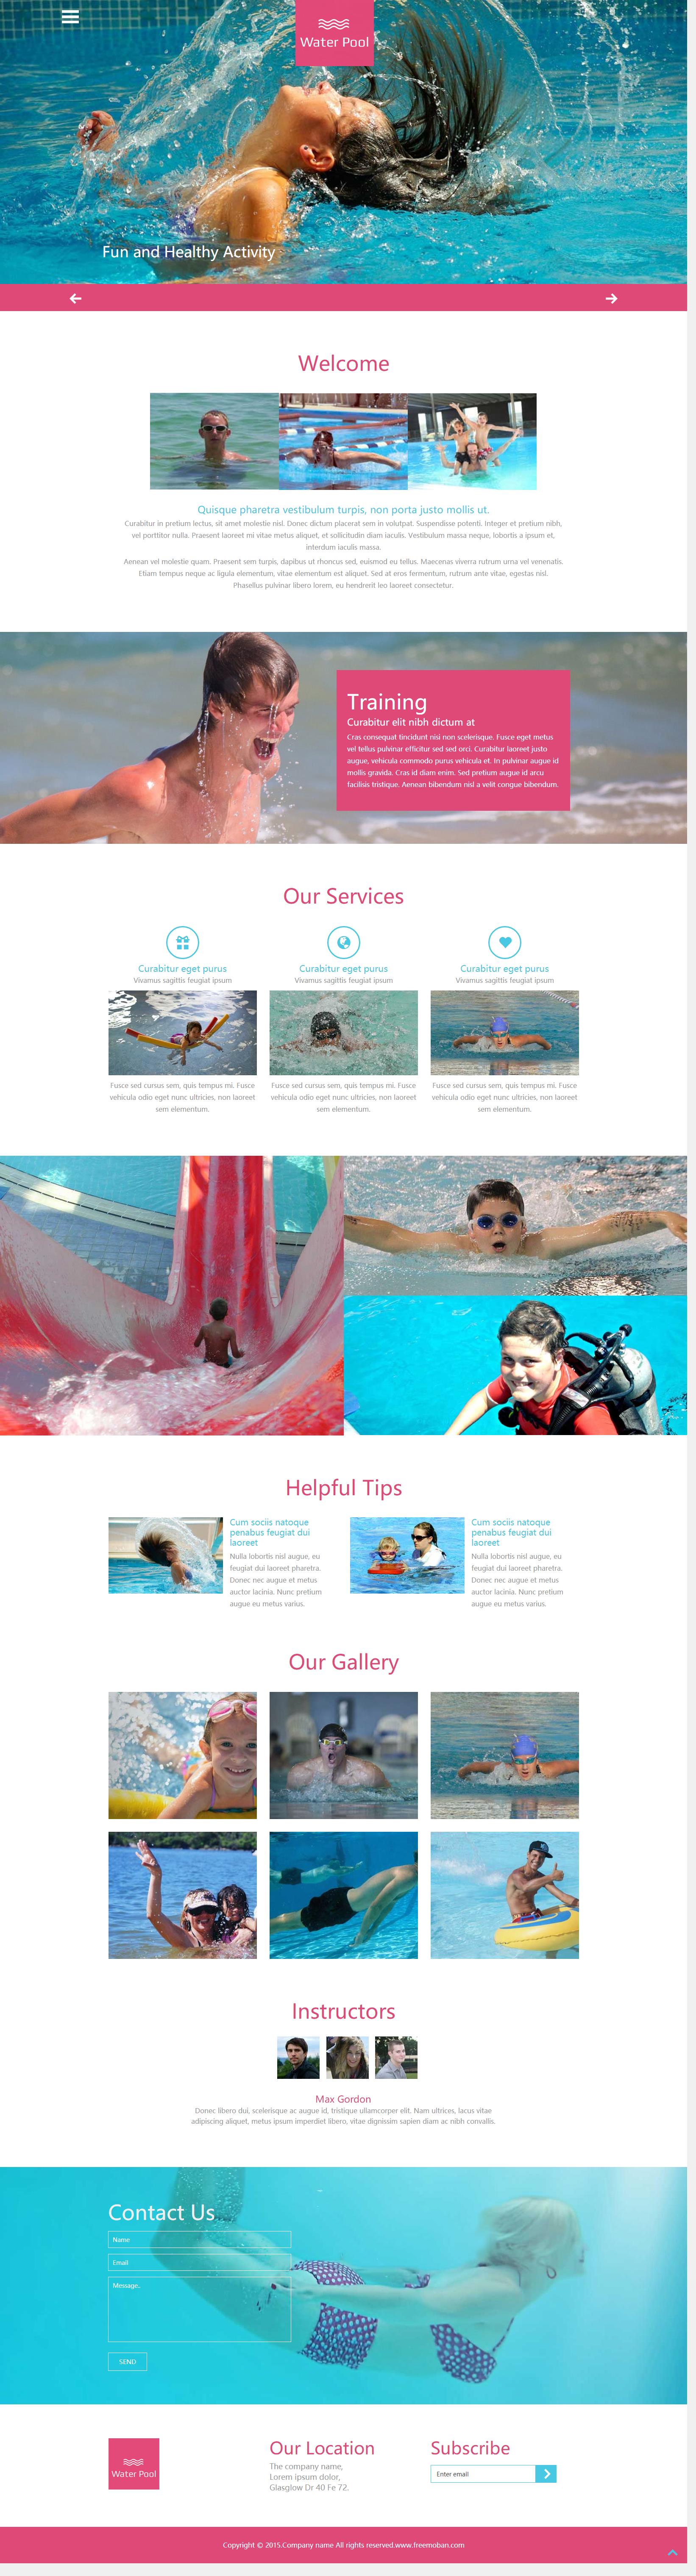 粉色大气风格的室内游泳馆网站模板下载